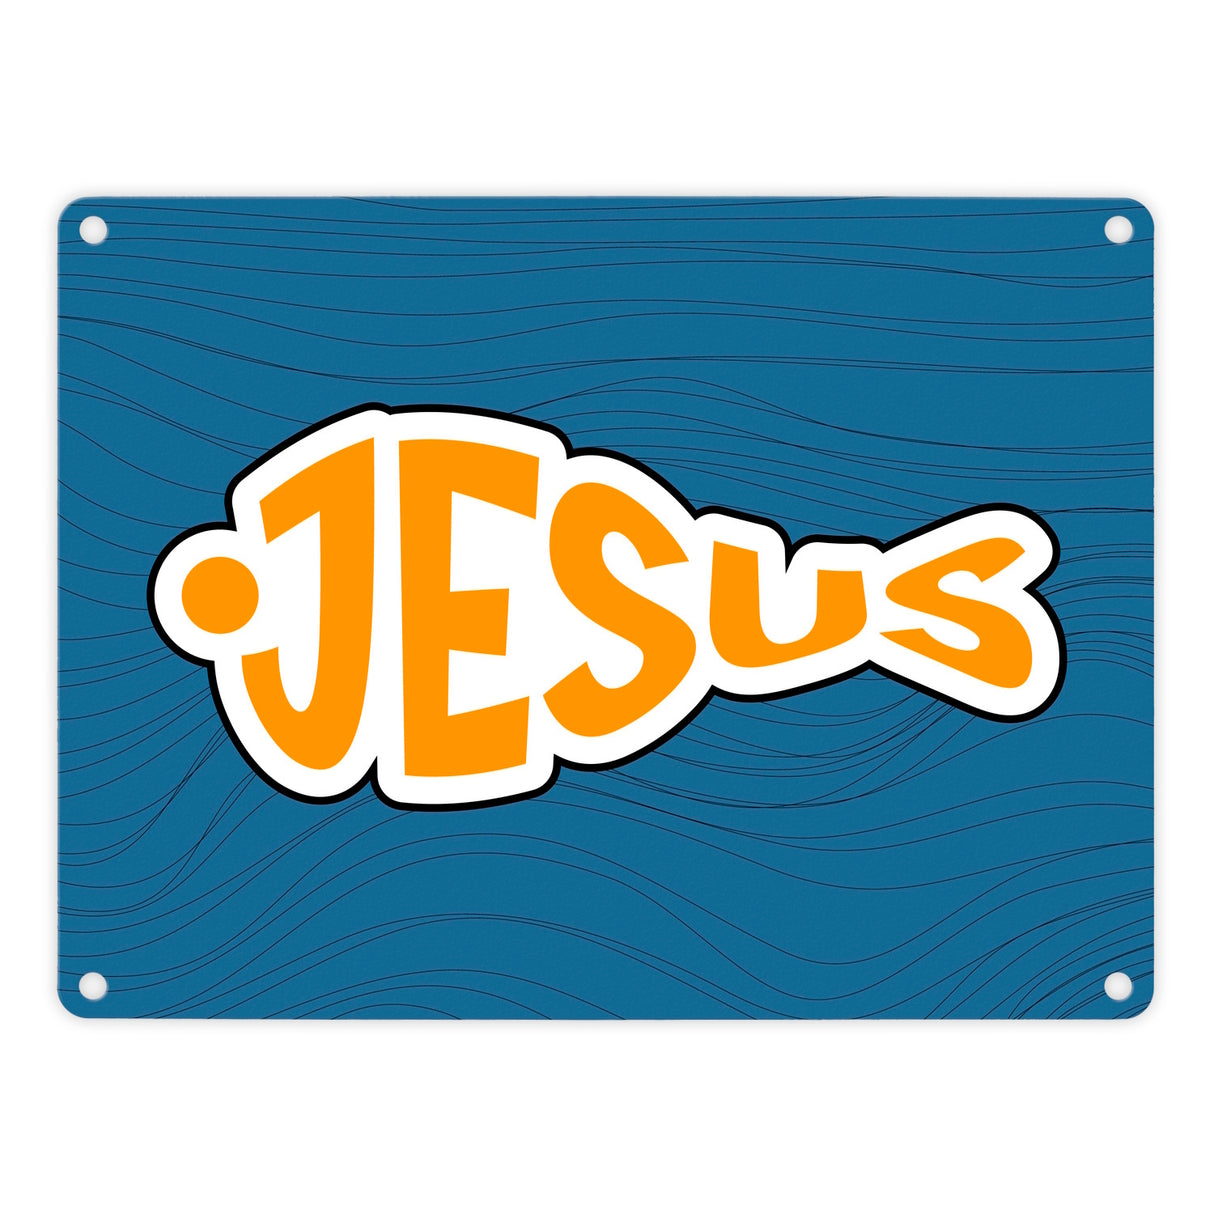 Jesus-Fisch Metallschild in 15x20 cm für Gläubige